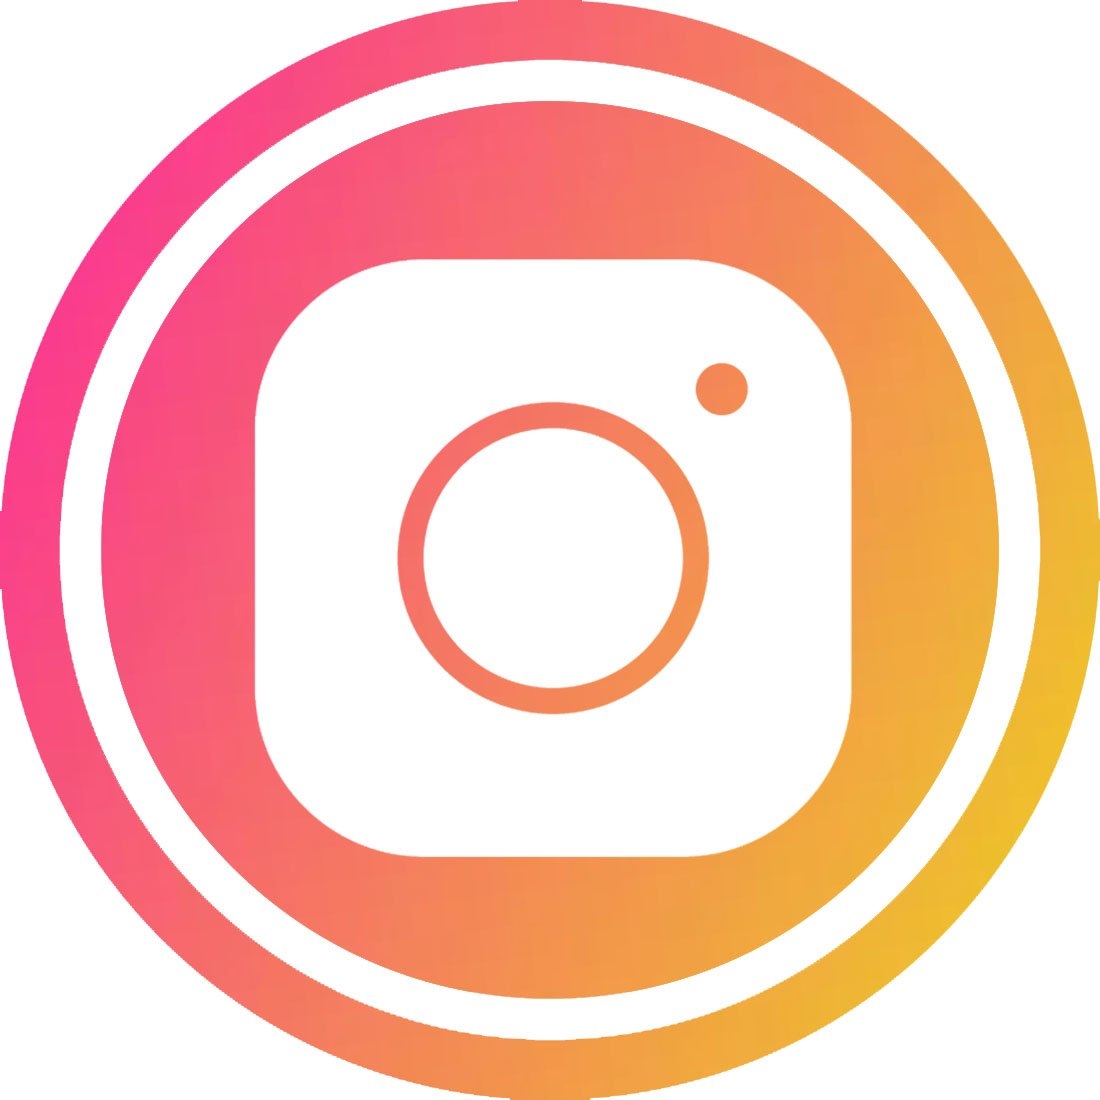 Аватарку в инстаграме в полном размере. Круглые аватарки. Круглый логотип. Логотип Instagram круглый. Инстаграм.